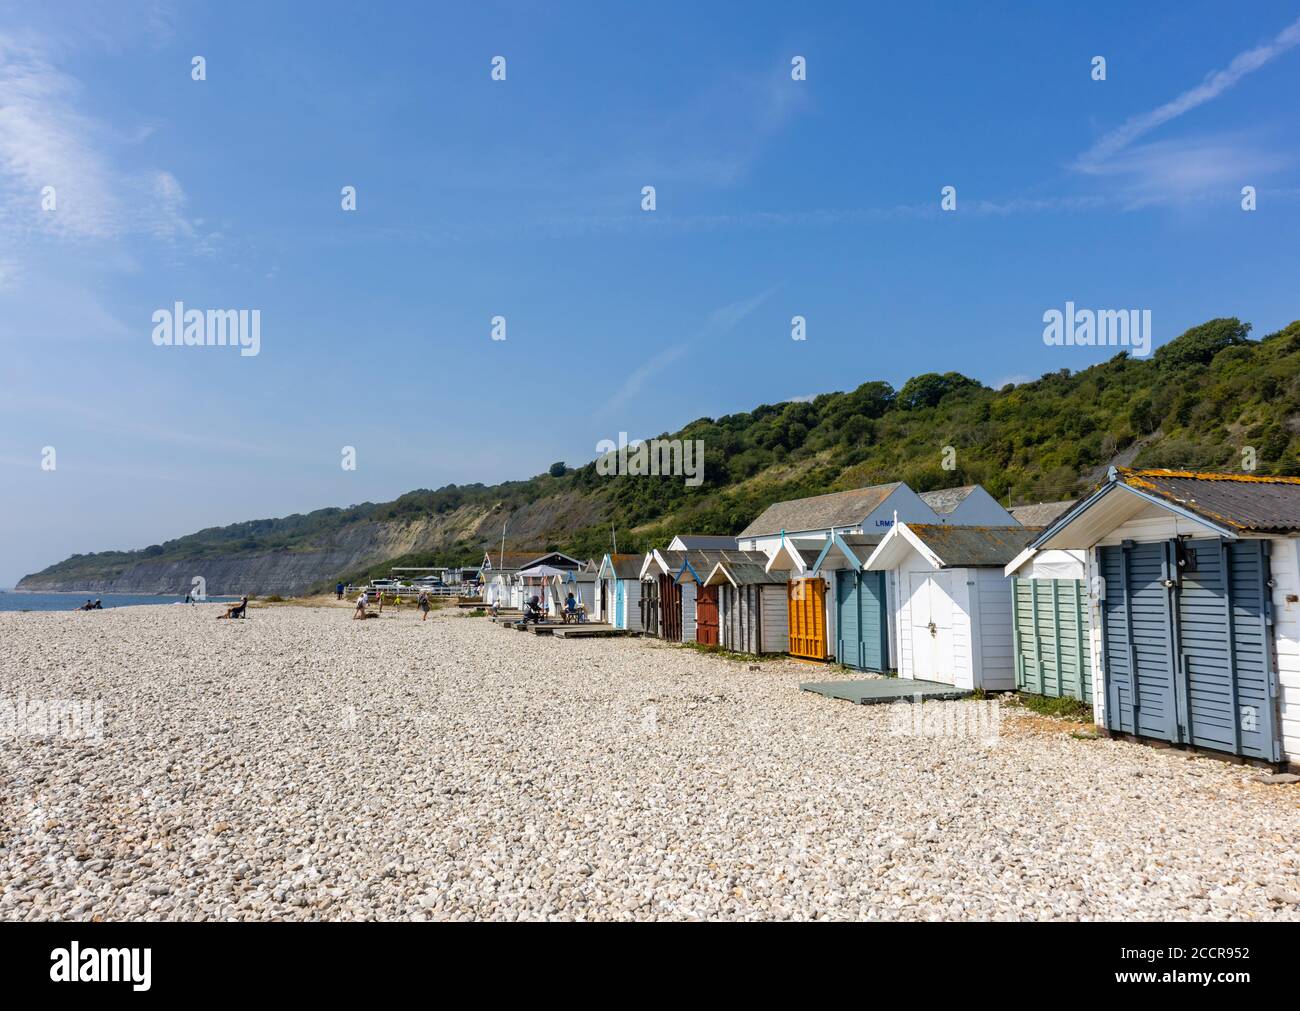 Monmouth Beach et Chipple Bay à l'ouest de Lyme Regis, une station balnéaire populaire sur la côte jurassique à Dorset, au sud-ouest de l'Angleterre Banque D'Images